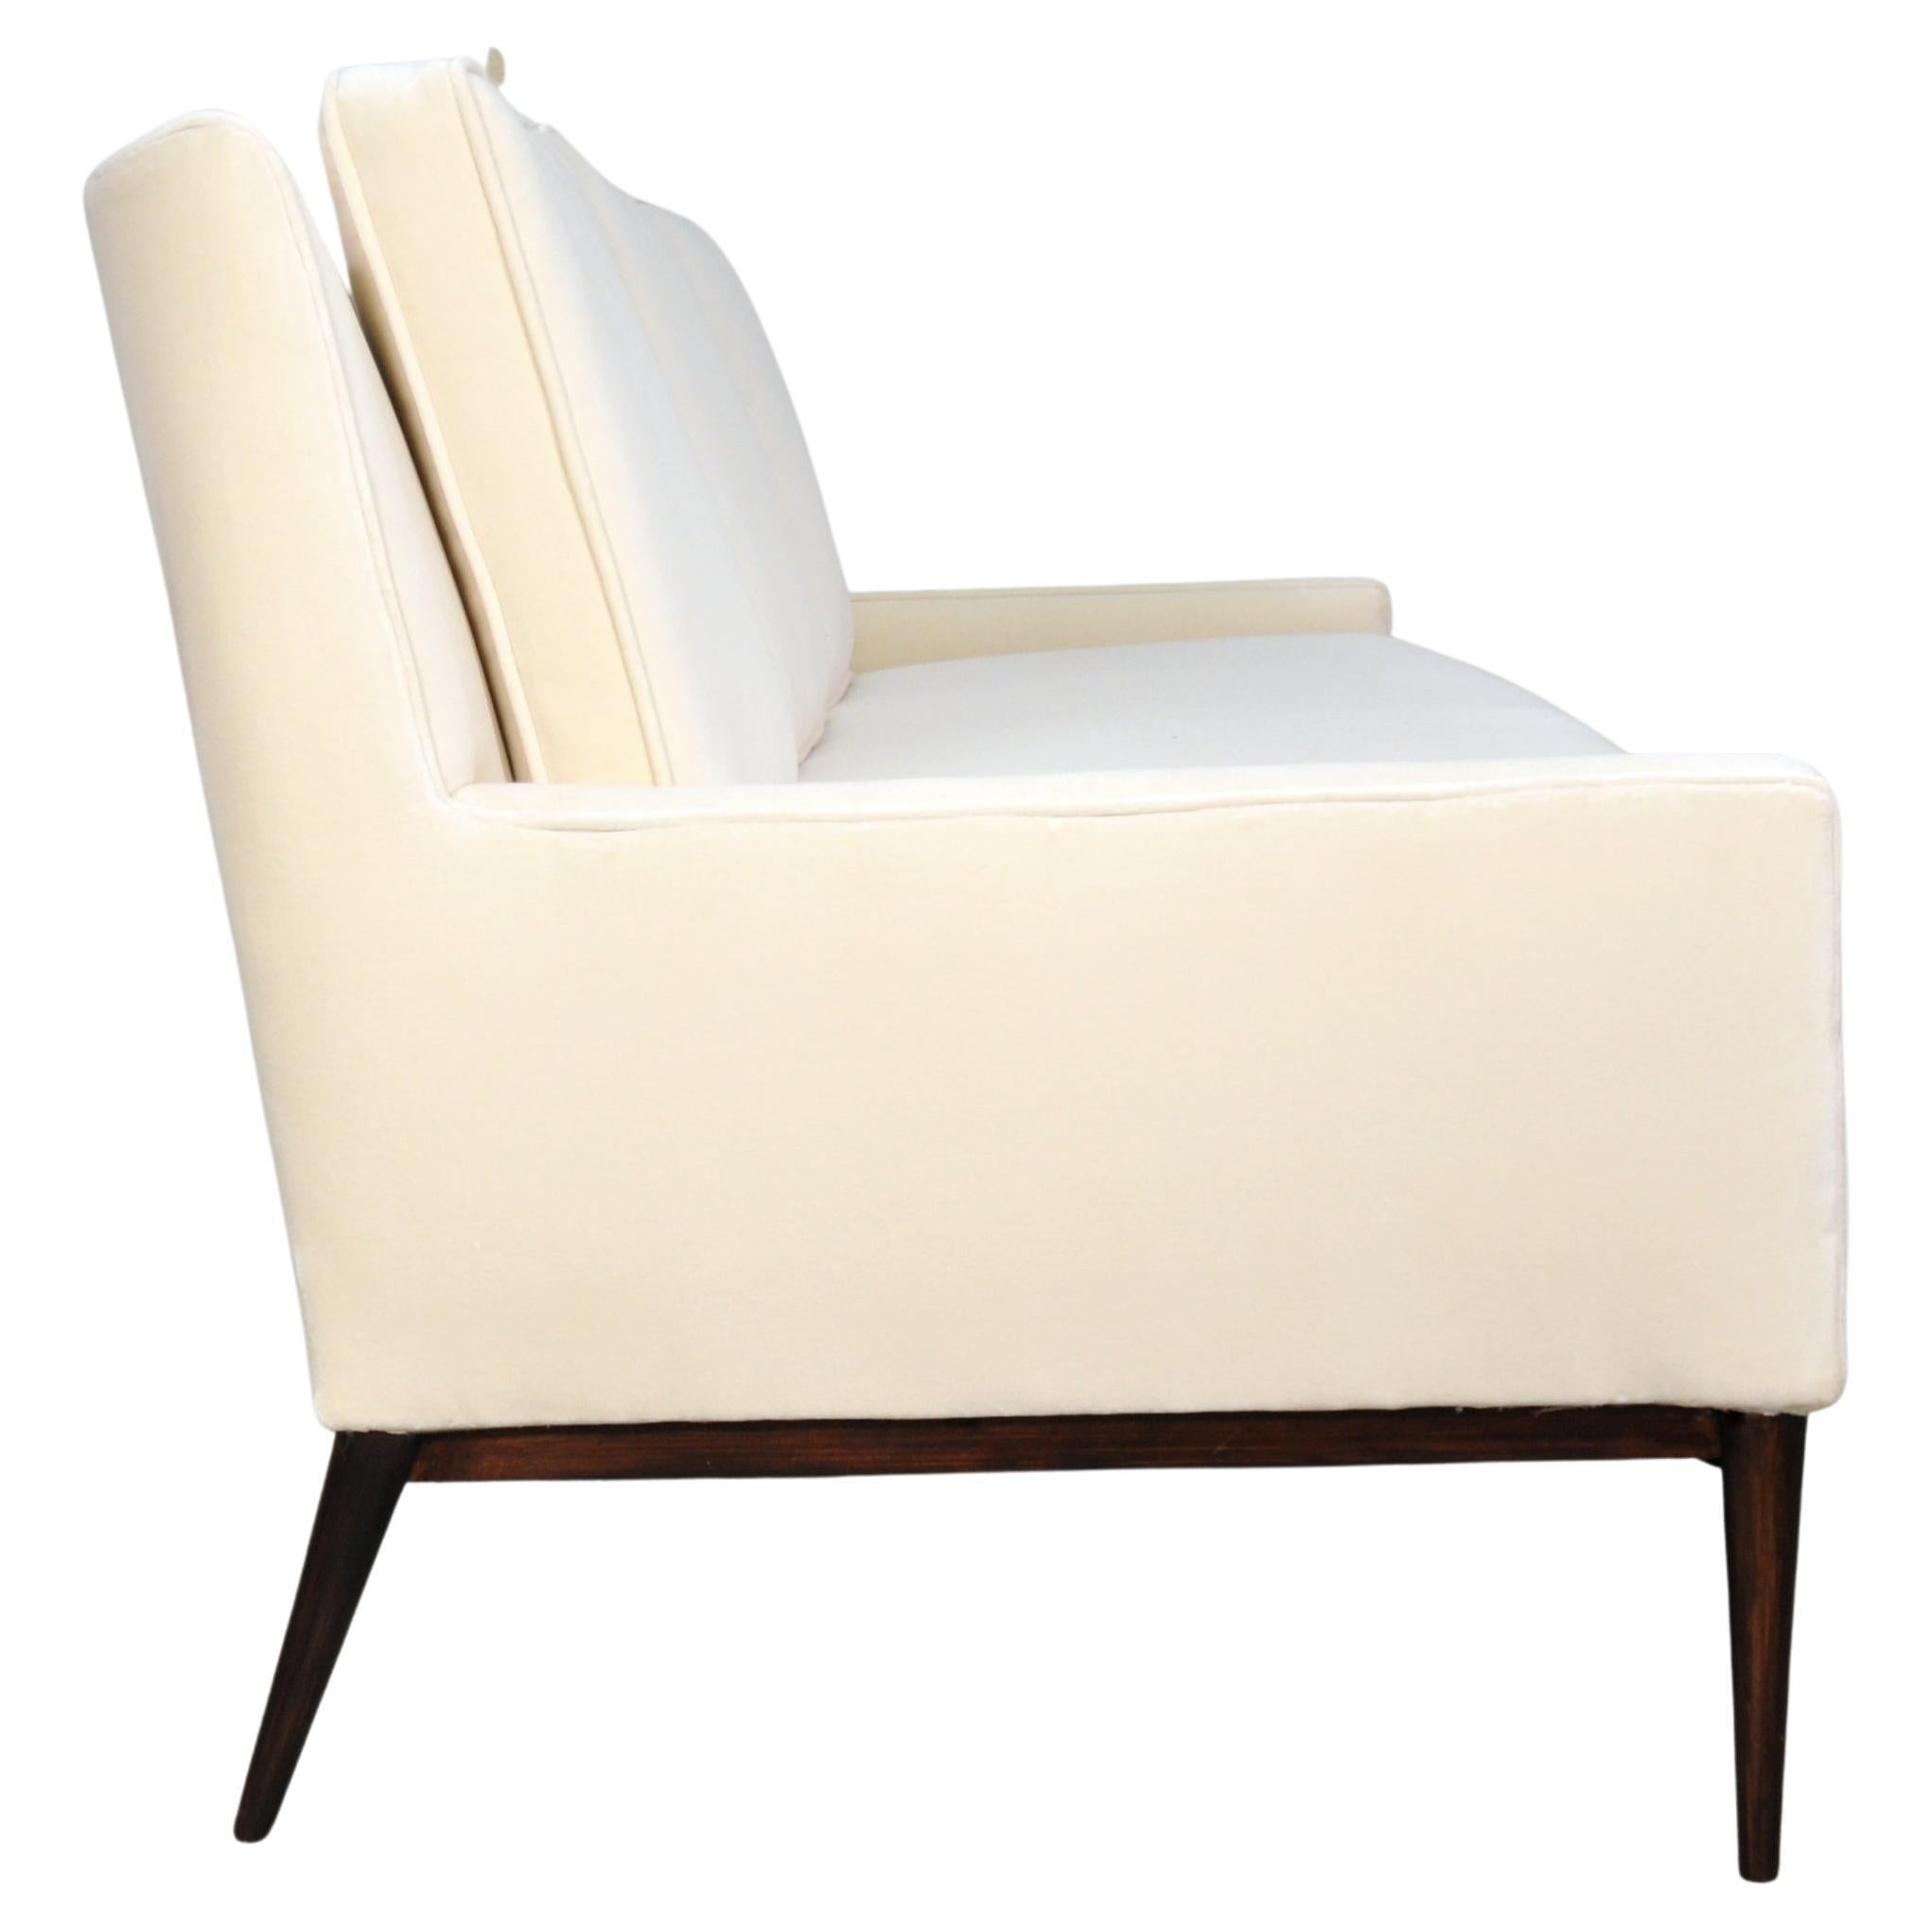 Neu gepolstertes Mid-Century Modern Modell 1307 hellcremefarbenes Samtsofa von Paul McCobb für Directional. Die Couch ist mit einem wunderschönen neutralen Samt bezogen worden. Das Sofa hat eine leicht geflügelte Rückenlehne und ein wunderschön